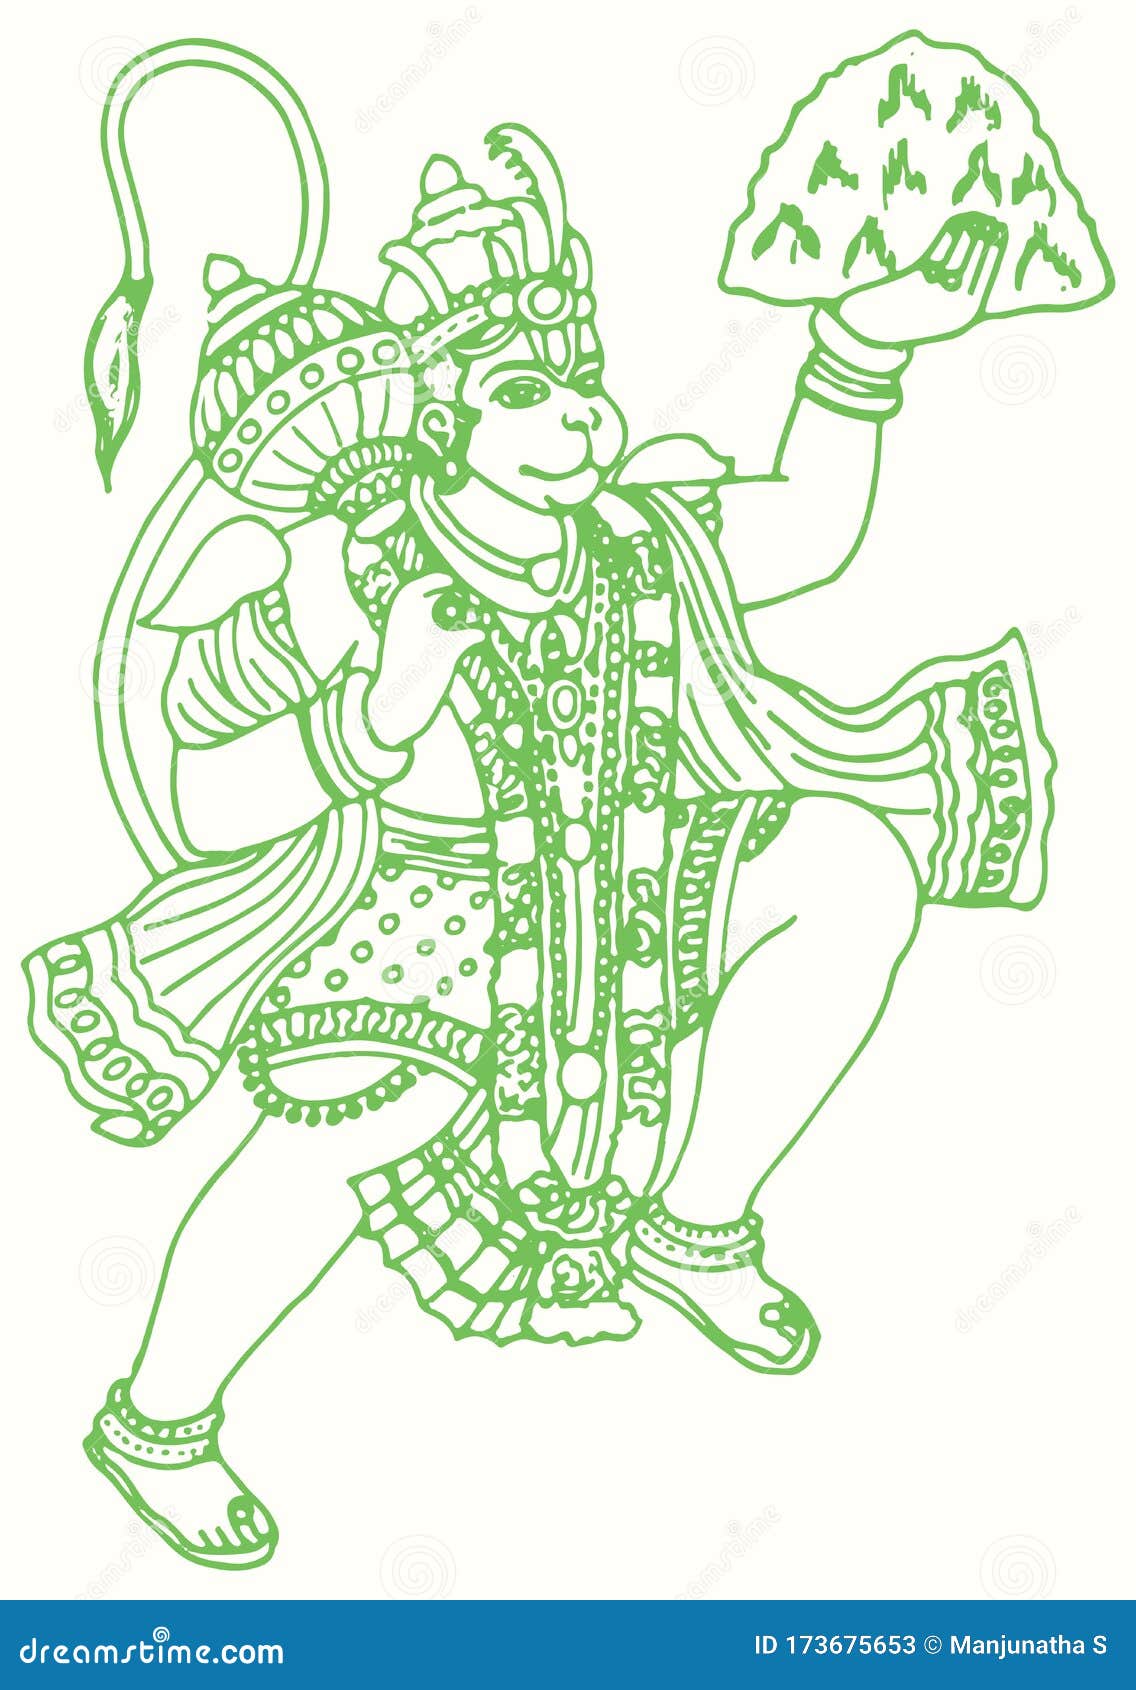 Lord Hanuman Pencil Sketch | Art drawings, Pencil art drawings, Drawings